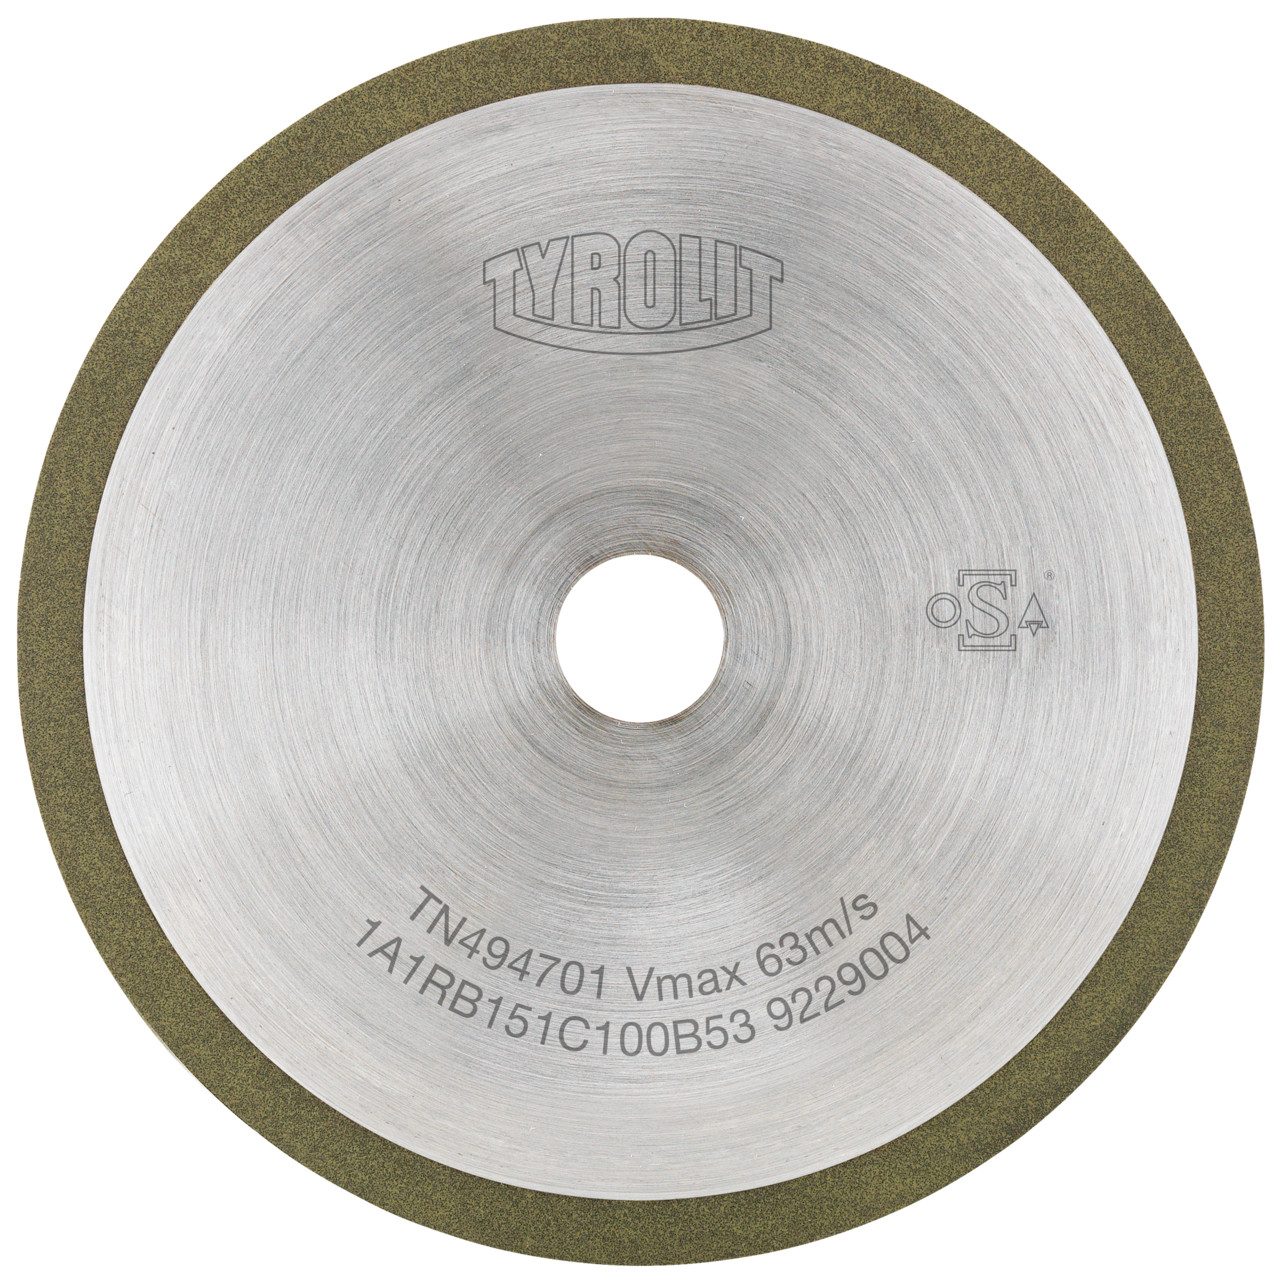 TYROLIT Utensili rotativi da taglio DxDxH 125x1x20 Per metallo duro, forma: 1A1R (disco da taglio con rotella continua), Art. 101000